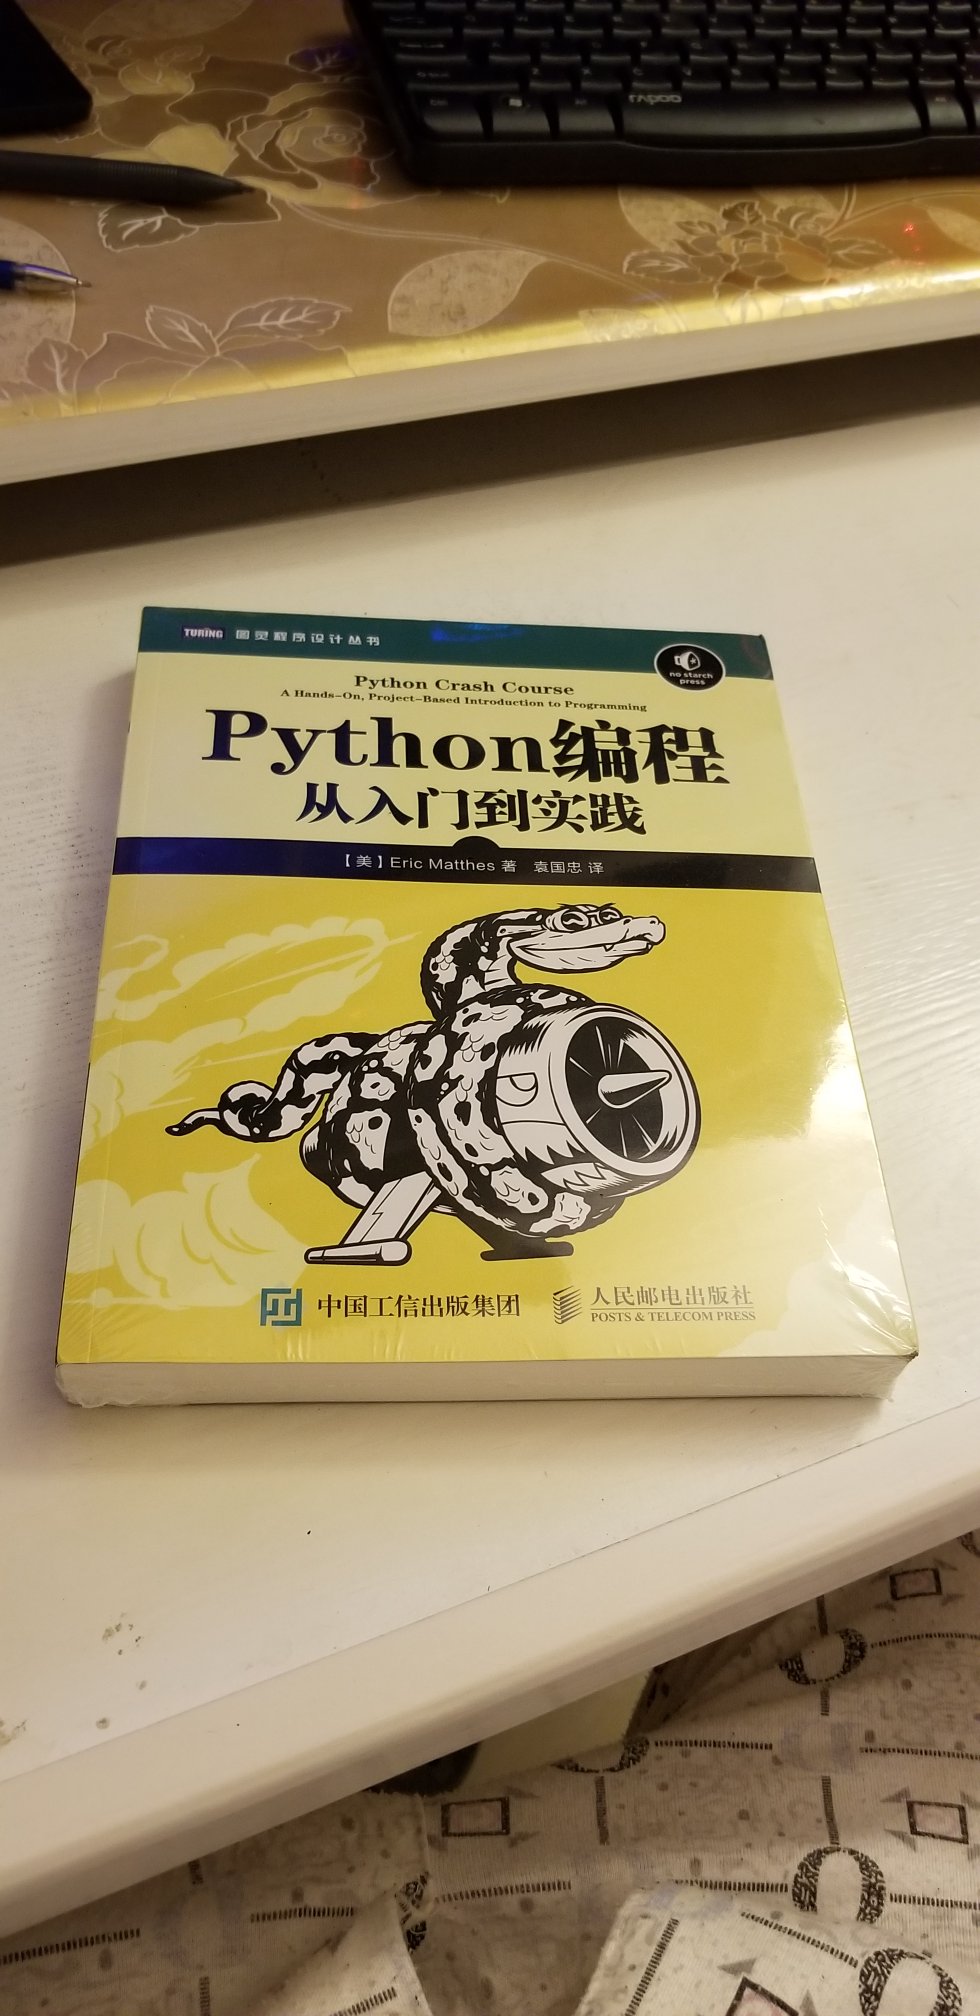 包装保护得很好，送货很快，书刚到还没好好看，想入门学Python很多人都推荐了这本书，所以就买下来了。